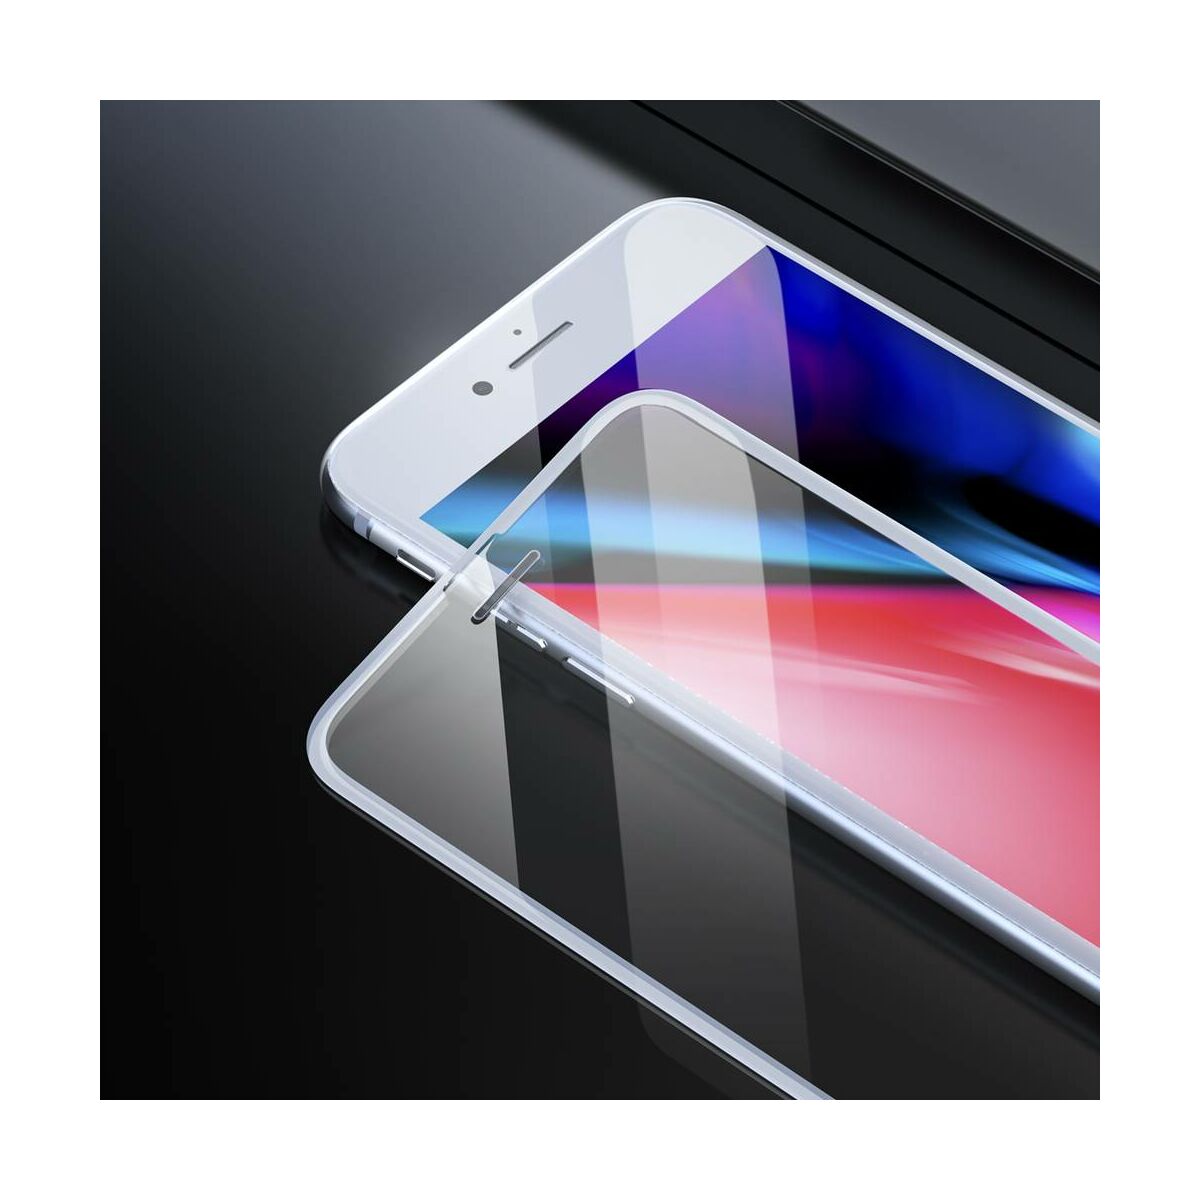 Baseus iPhone 8/7/6 Plus 0.23 mm, teljes felületre lekerekített edzett üveg por elleni védelem, fehér (SGAPIPH8P-WA02)